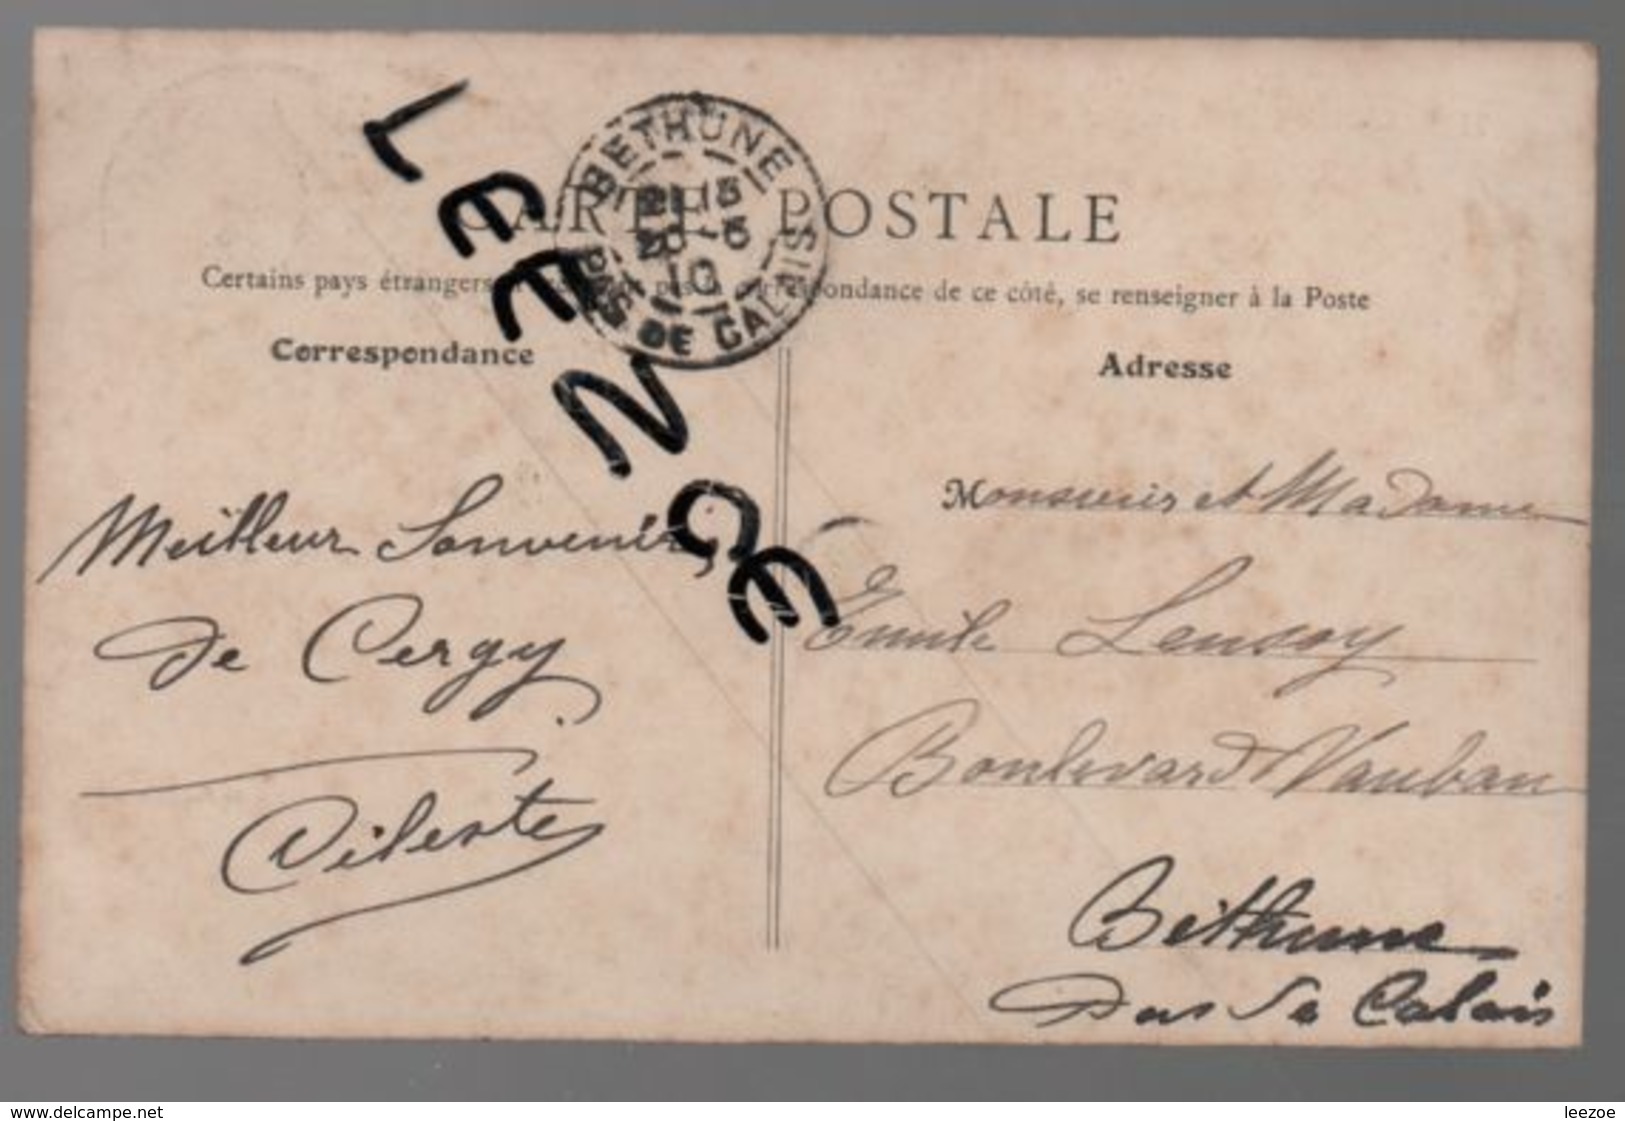 L'OISE PITTORESQUE..CERGY COUCHER DE SOLEIL...1910 - Cergy Pontoise